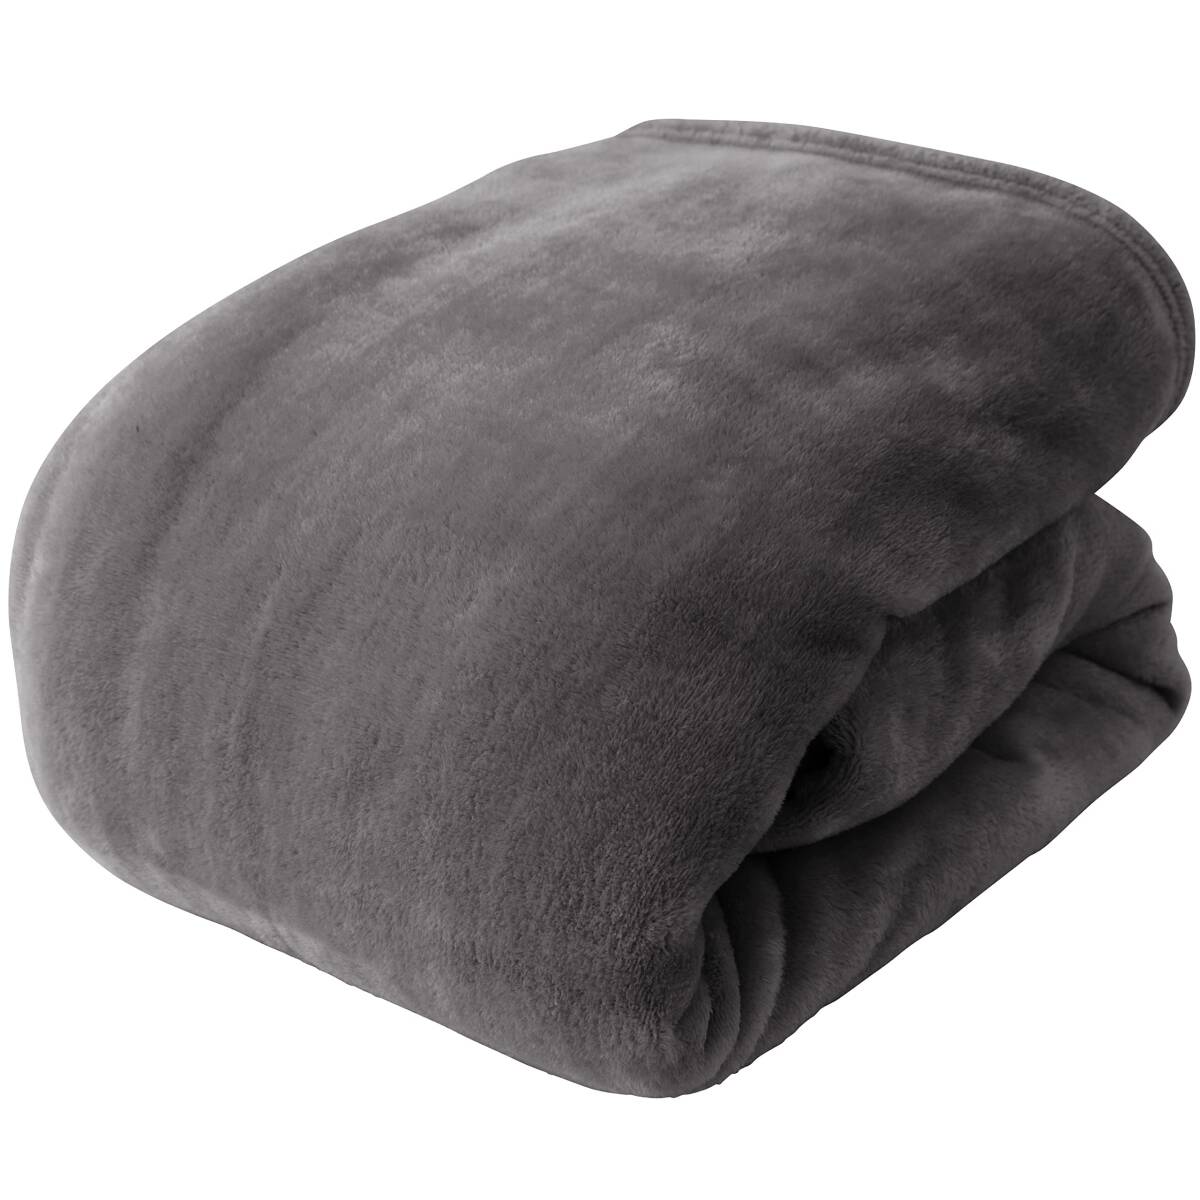  aqua (AQUA) Nice tei одеяло угольно-серый одиночный (140×200cm) mofua (mofa) покрывало зима продажа 11 годовщина 